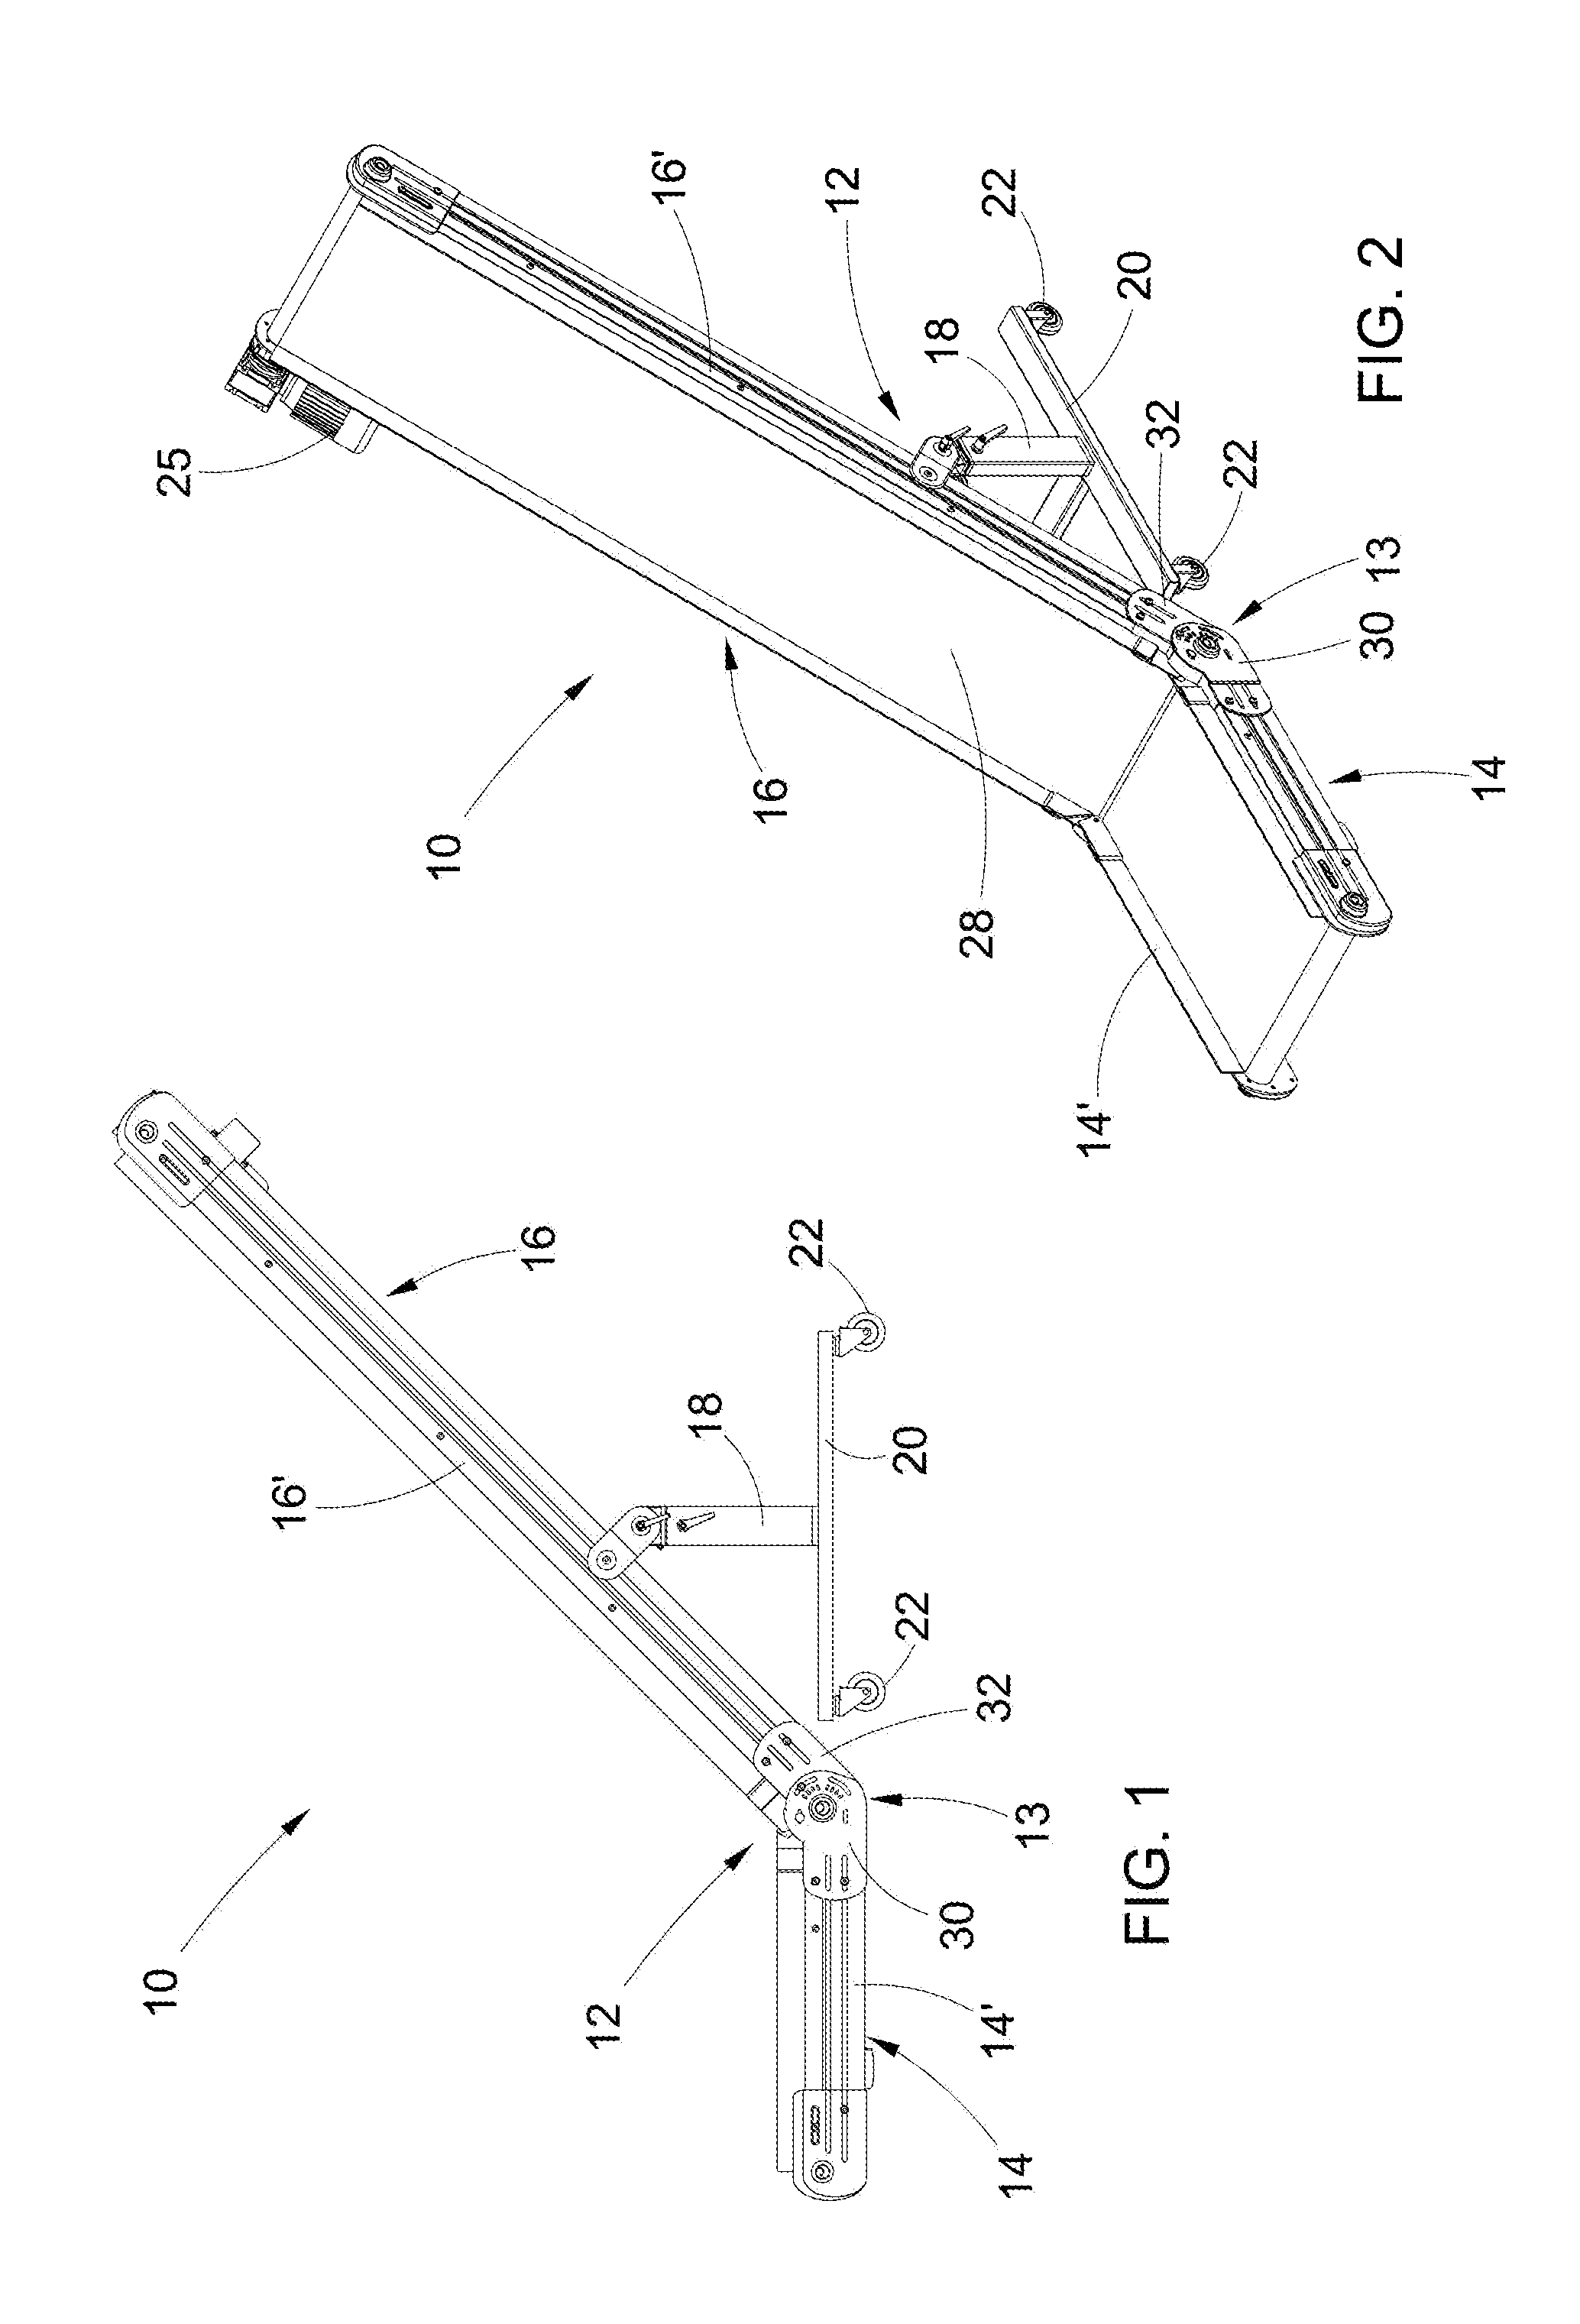 Elevator conveyor belt with adjustable slope